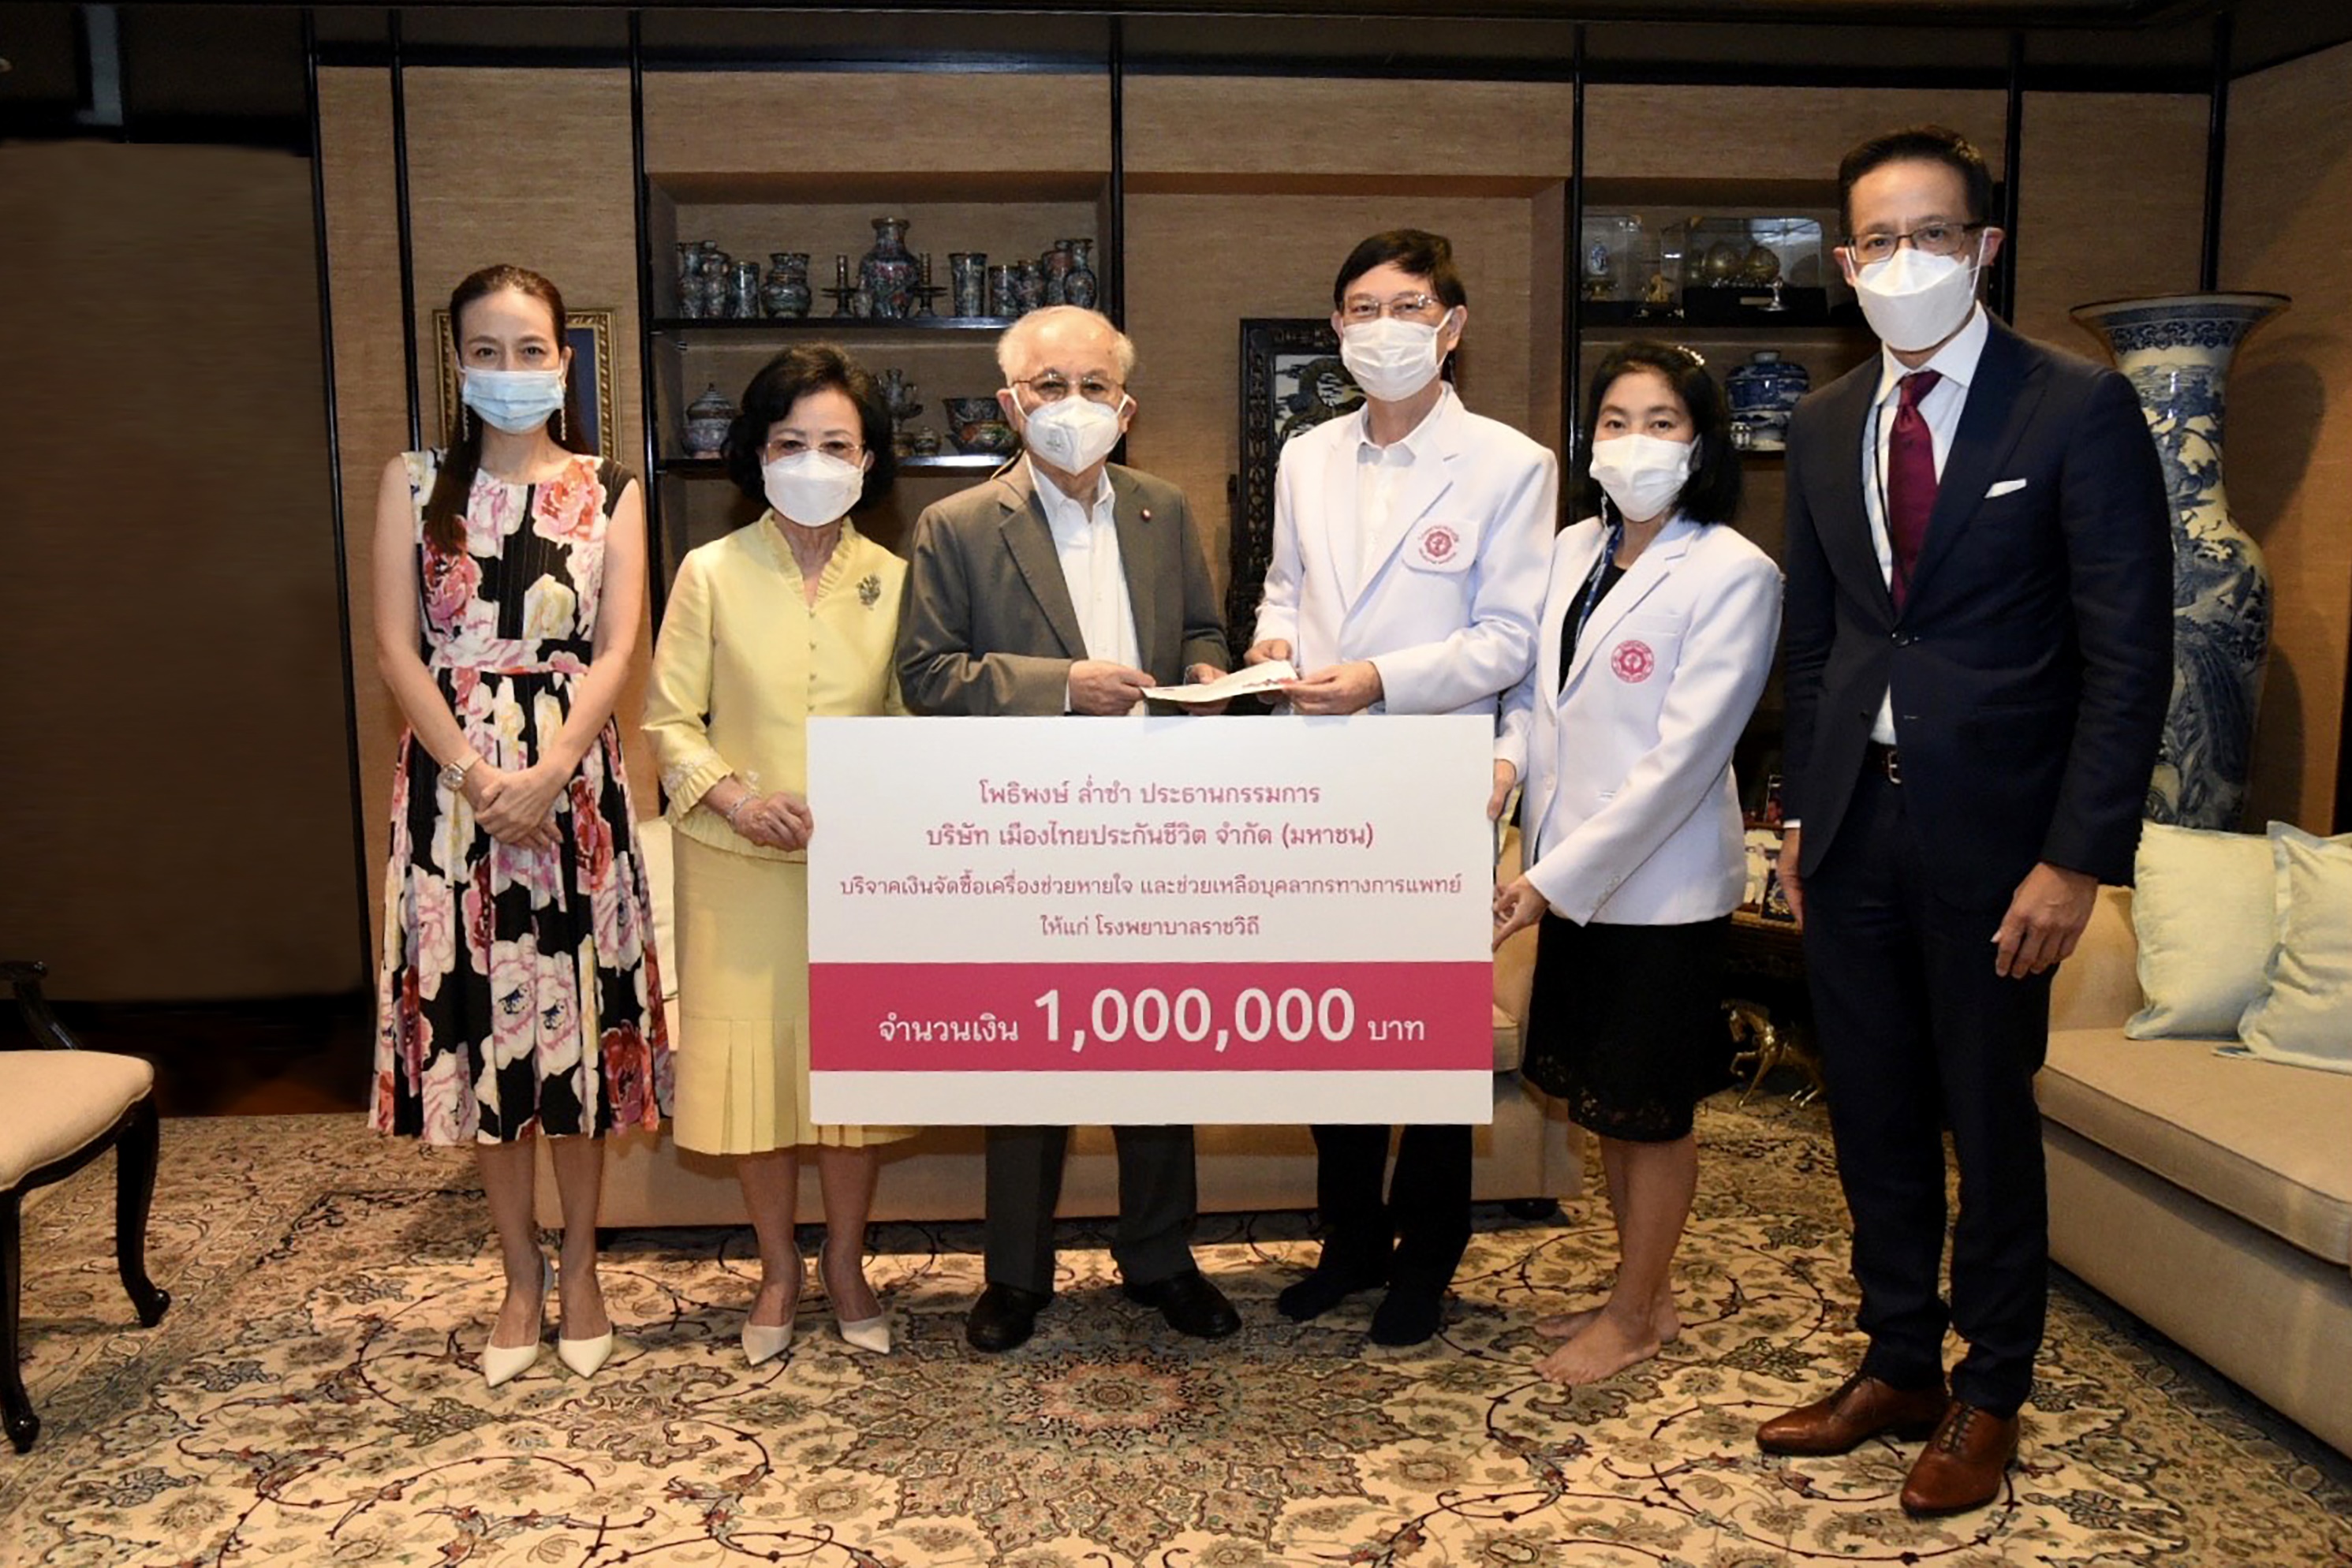 เมืองไทยประกันชีวิต ร่วมบริจาคเงิน 1 ล้านบาท แก่โรงพยาบาลราชวิถี สำหรับจัดซื้อเครื่องช่วยหายใจ